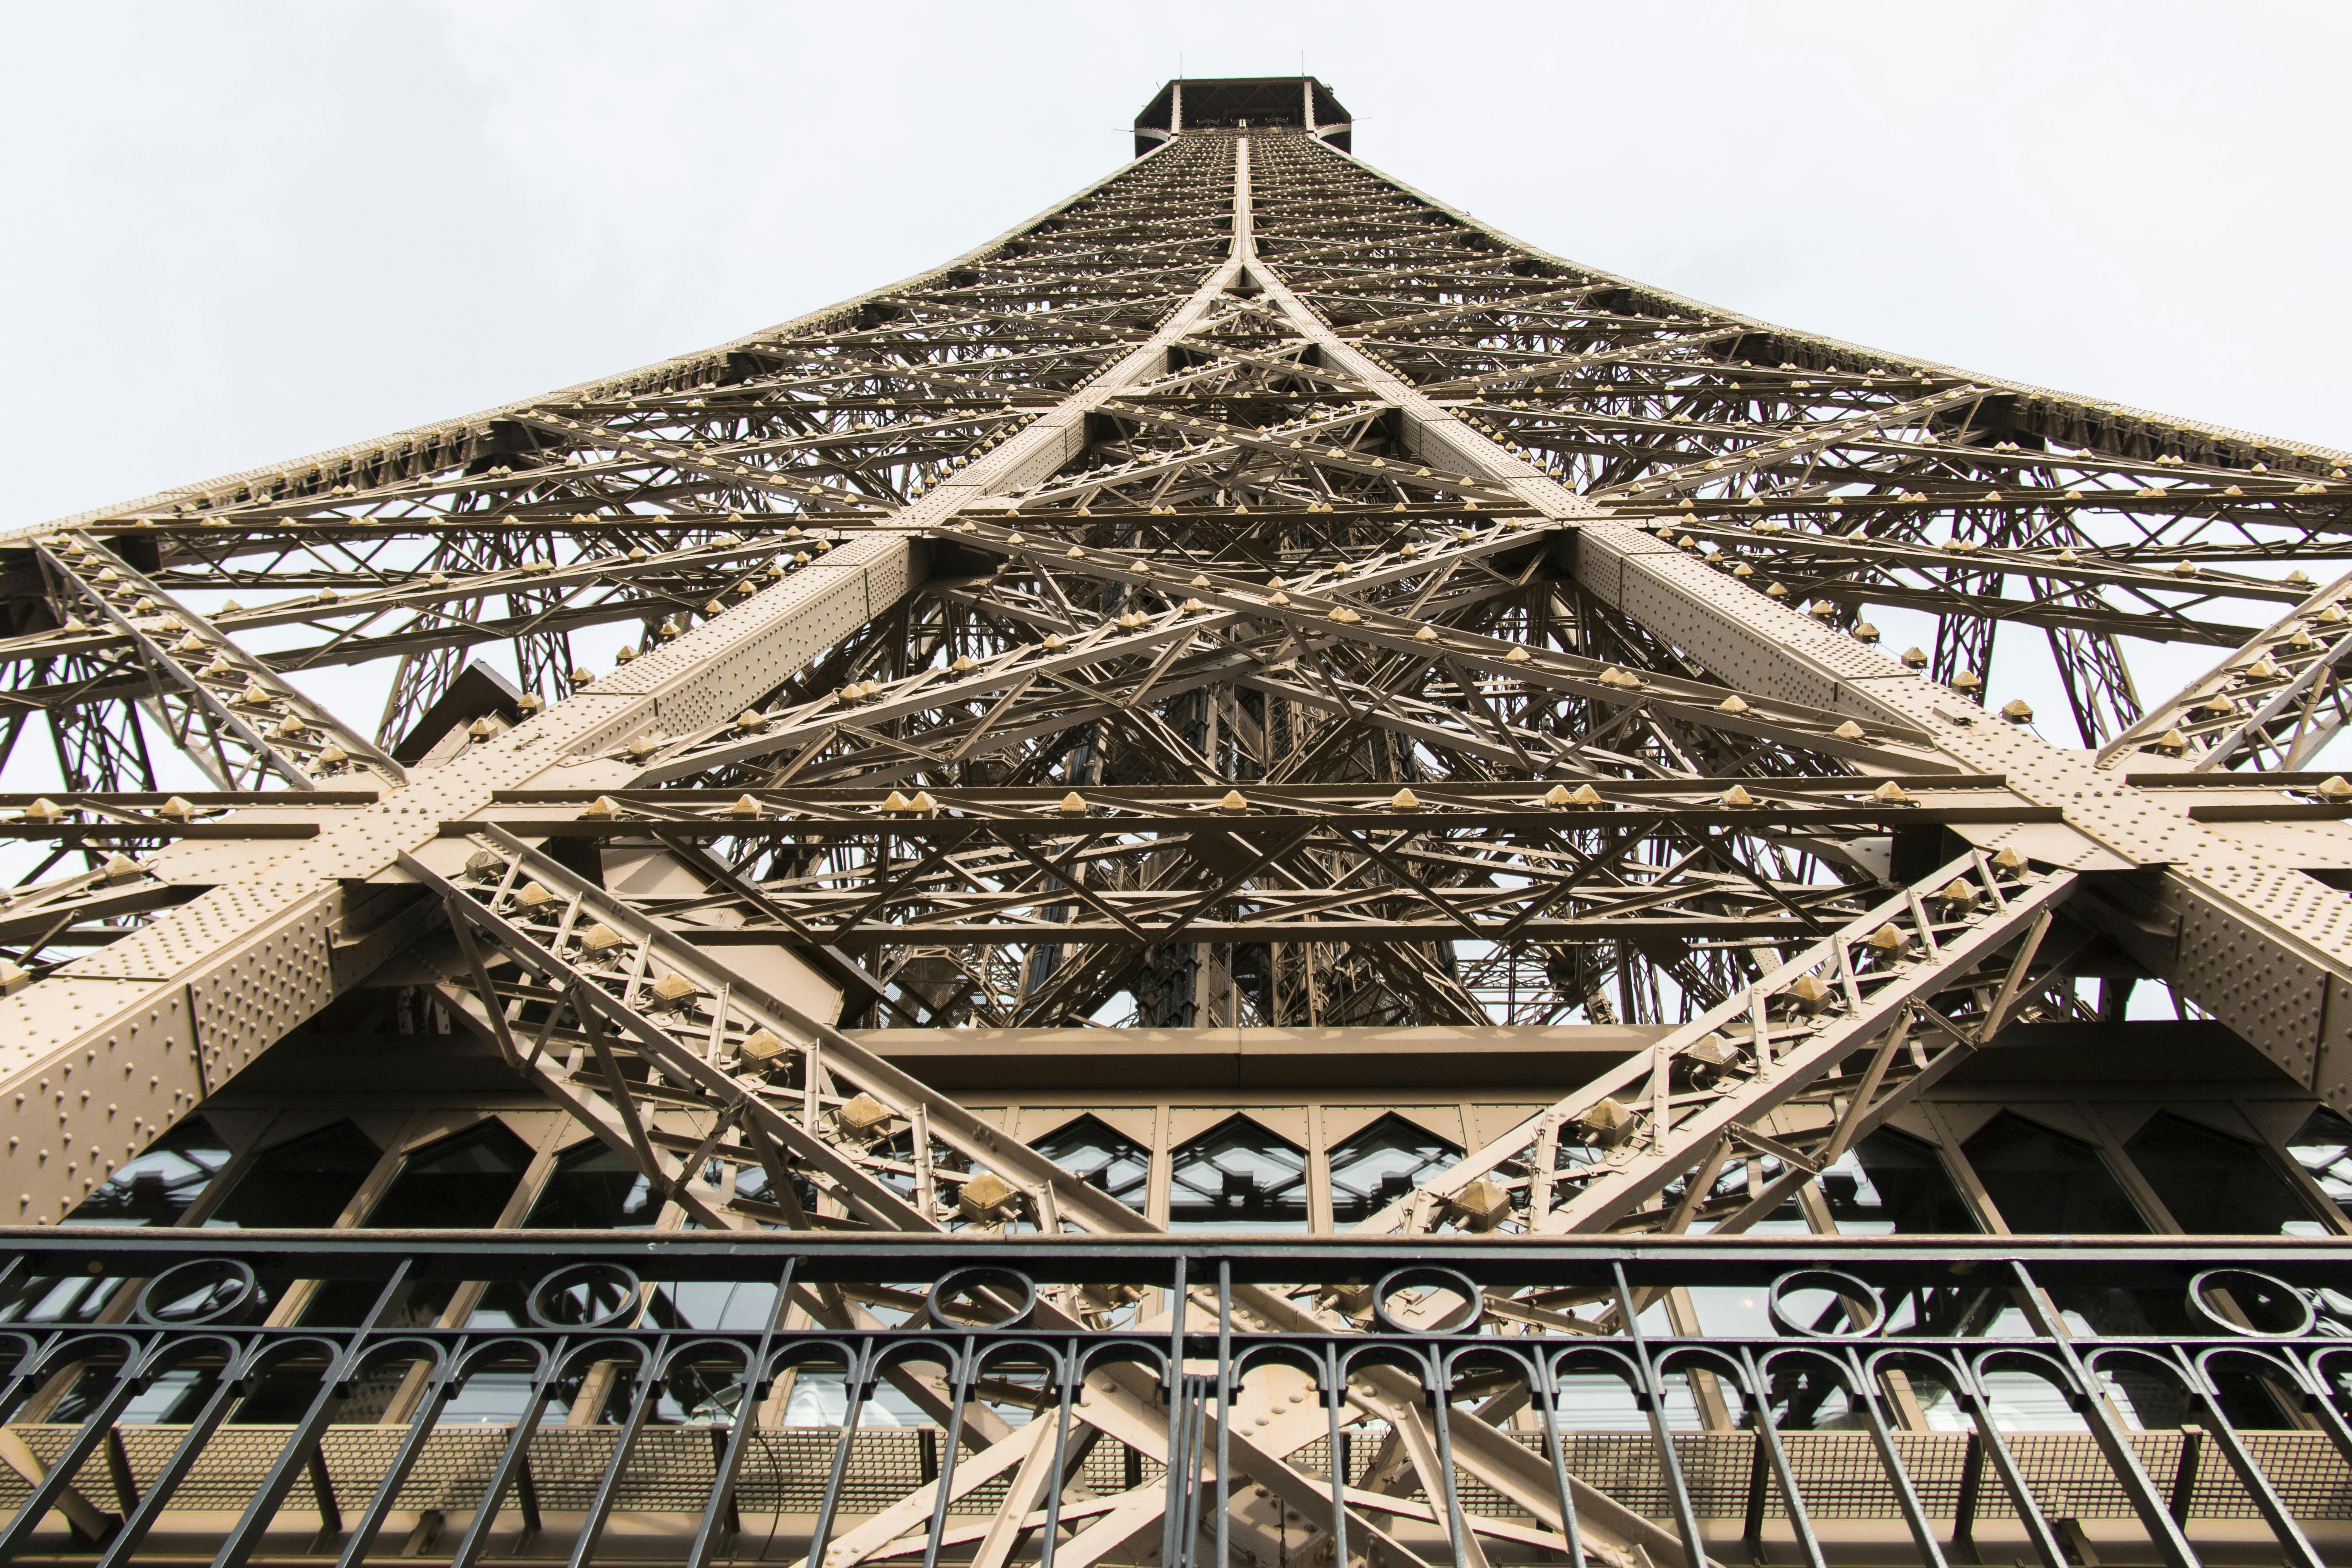 Entradas de acceso prioritario a la Torre Eiffel hasta la cima con un coordinador